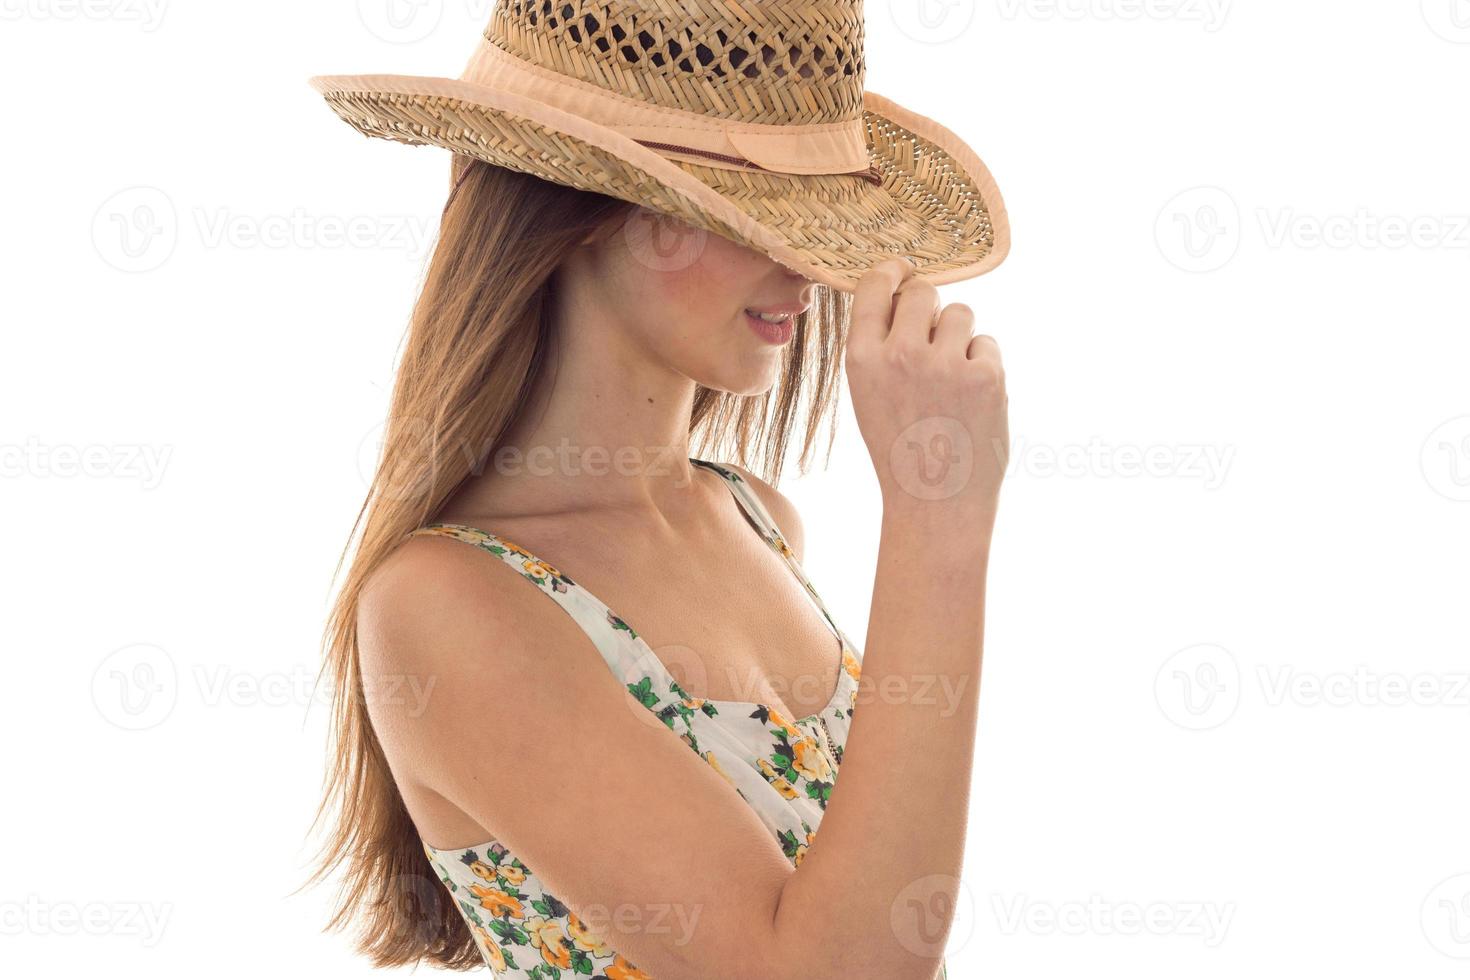 senhora bonita no chapéu de palha e sarafan com padrão floral posando isolado no fundo branco foto